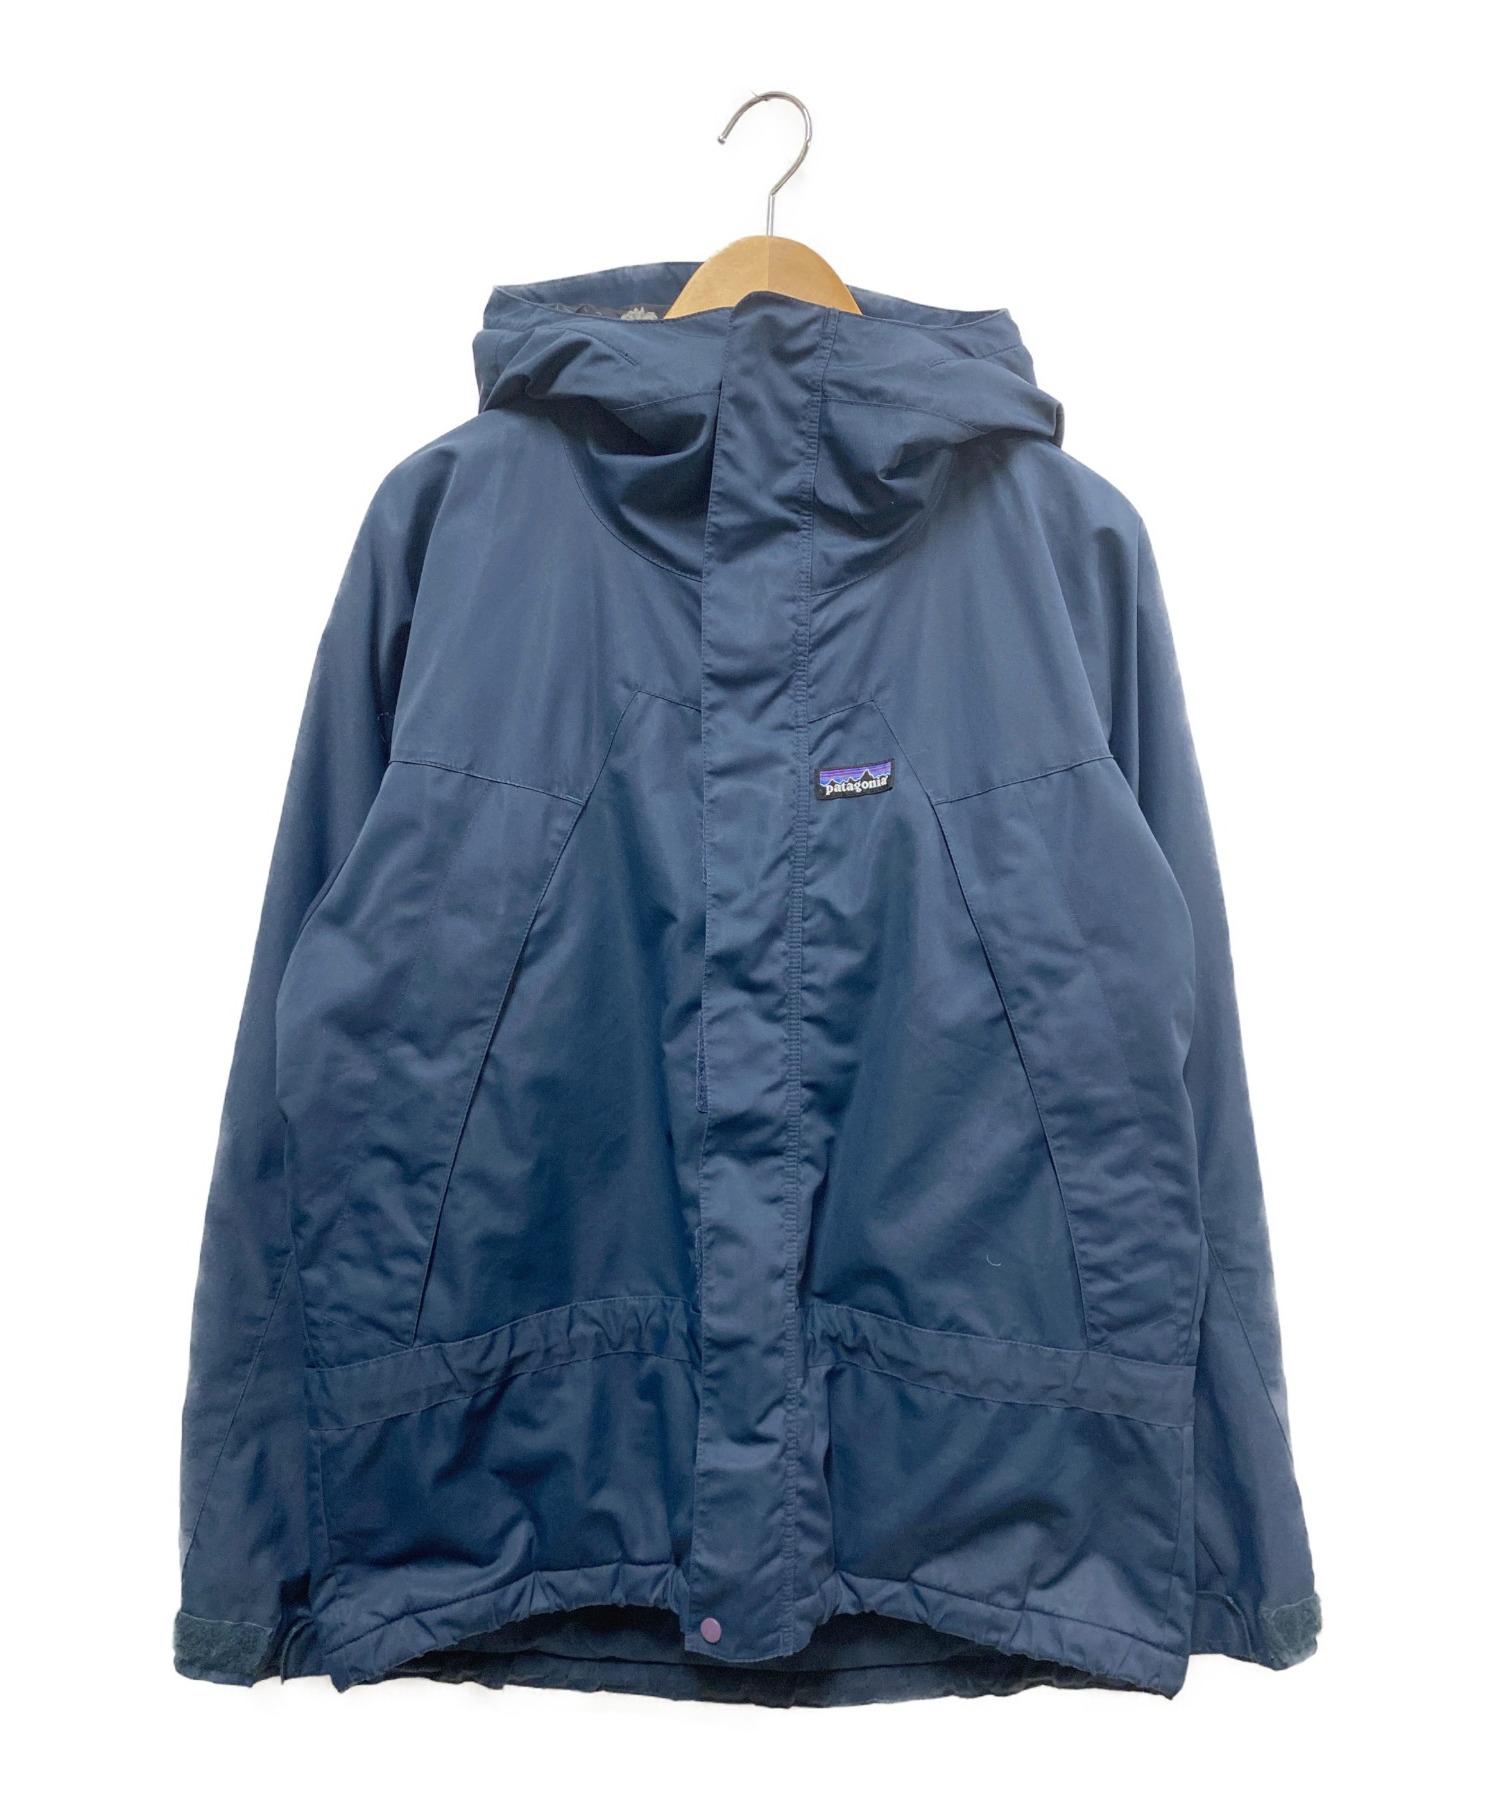 【中古・古着通販】Patagonia (パタゴニア) インファーノジャケット ネイビー サイズ:XS 生産終了モデル 2007年製